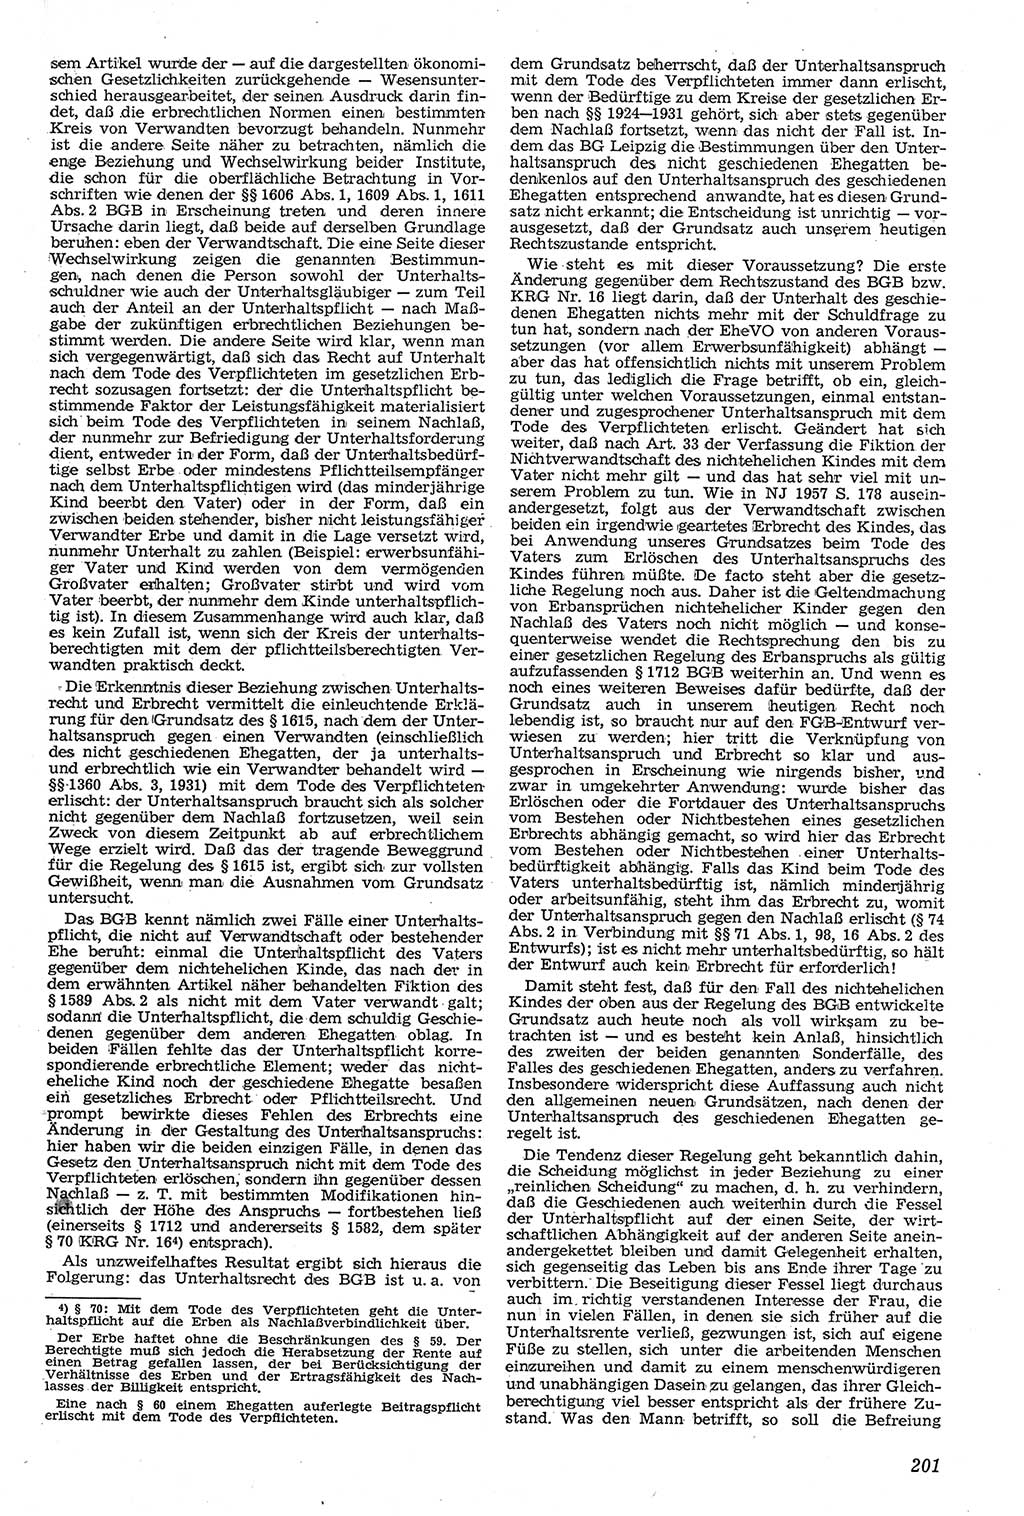 Neue Justiz (NJ), Zeitschrift für Recht und Rechtswissenschaft [Deutsche Demokratische Republik (DDR)], 11. Jahrgang 1957, Seite 201 (NJ DDR 1957, S. 201)